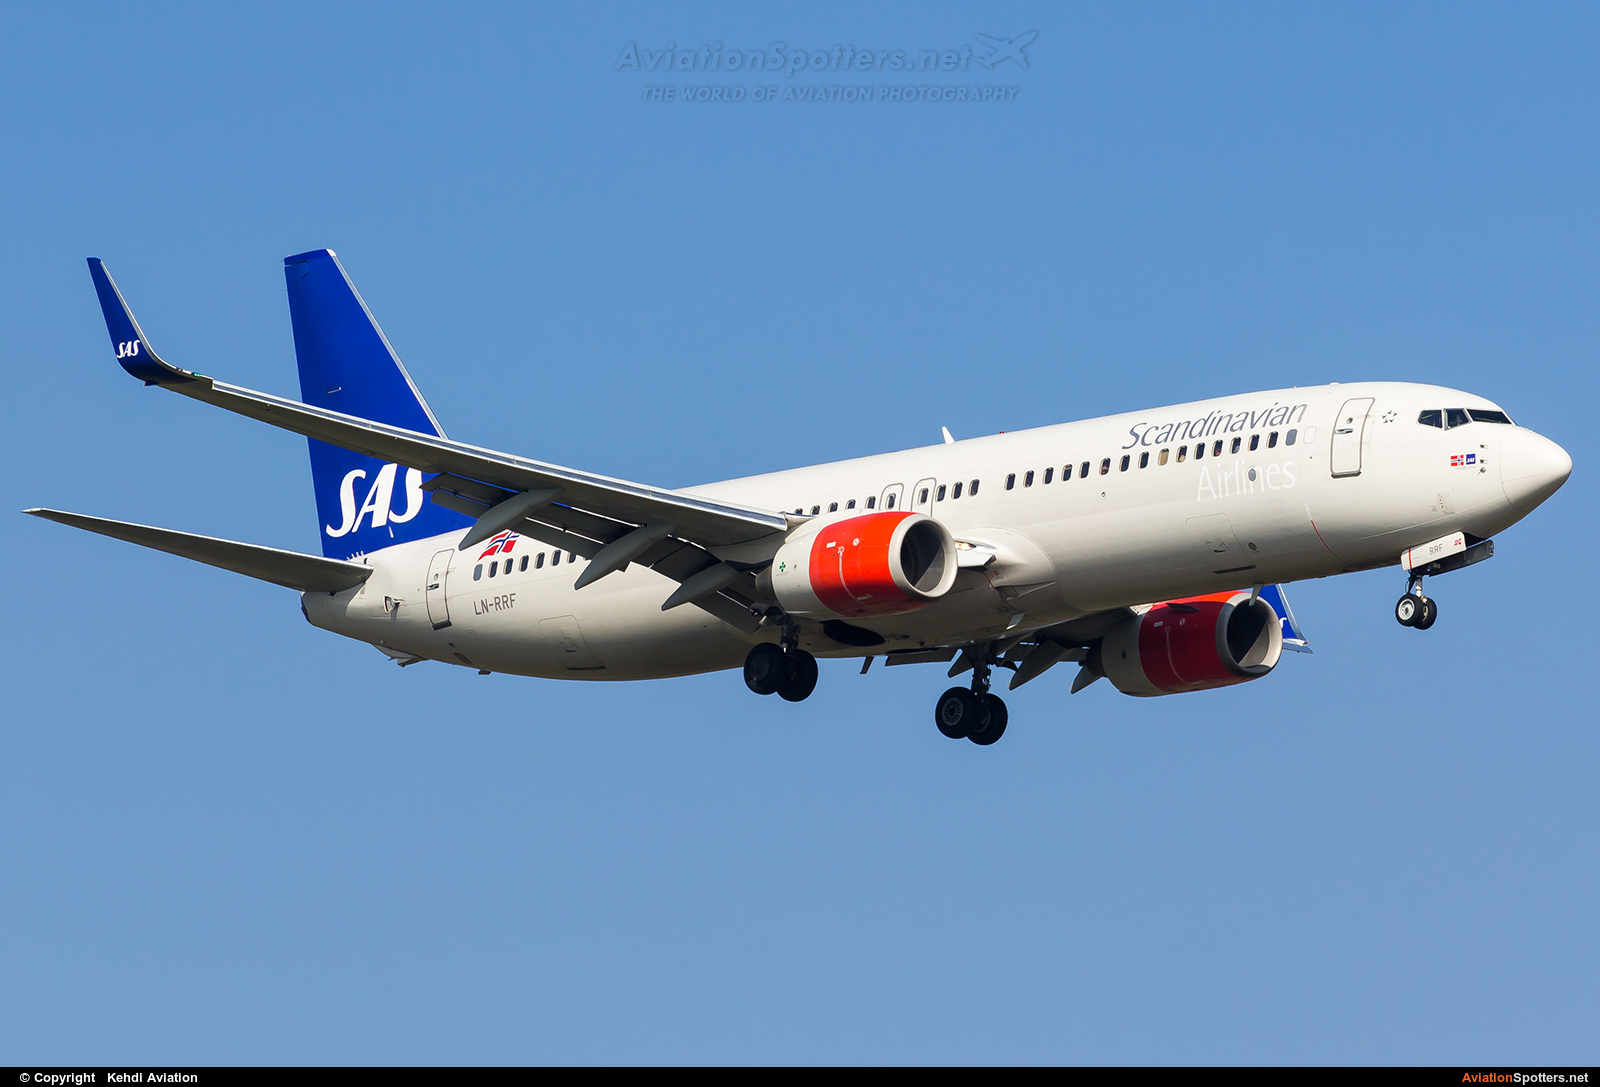 SAS - Scandinavian Airlines  -  737-800  (LN-RRF) By Kehdi Aviation (Kehdi Aviation)